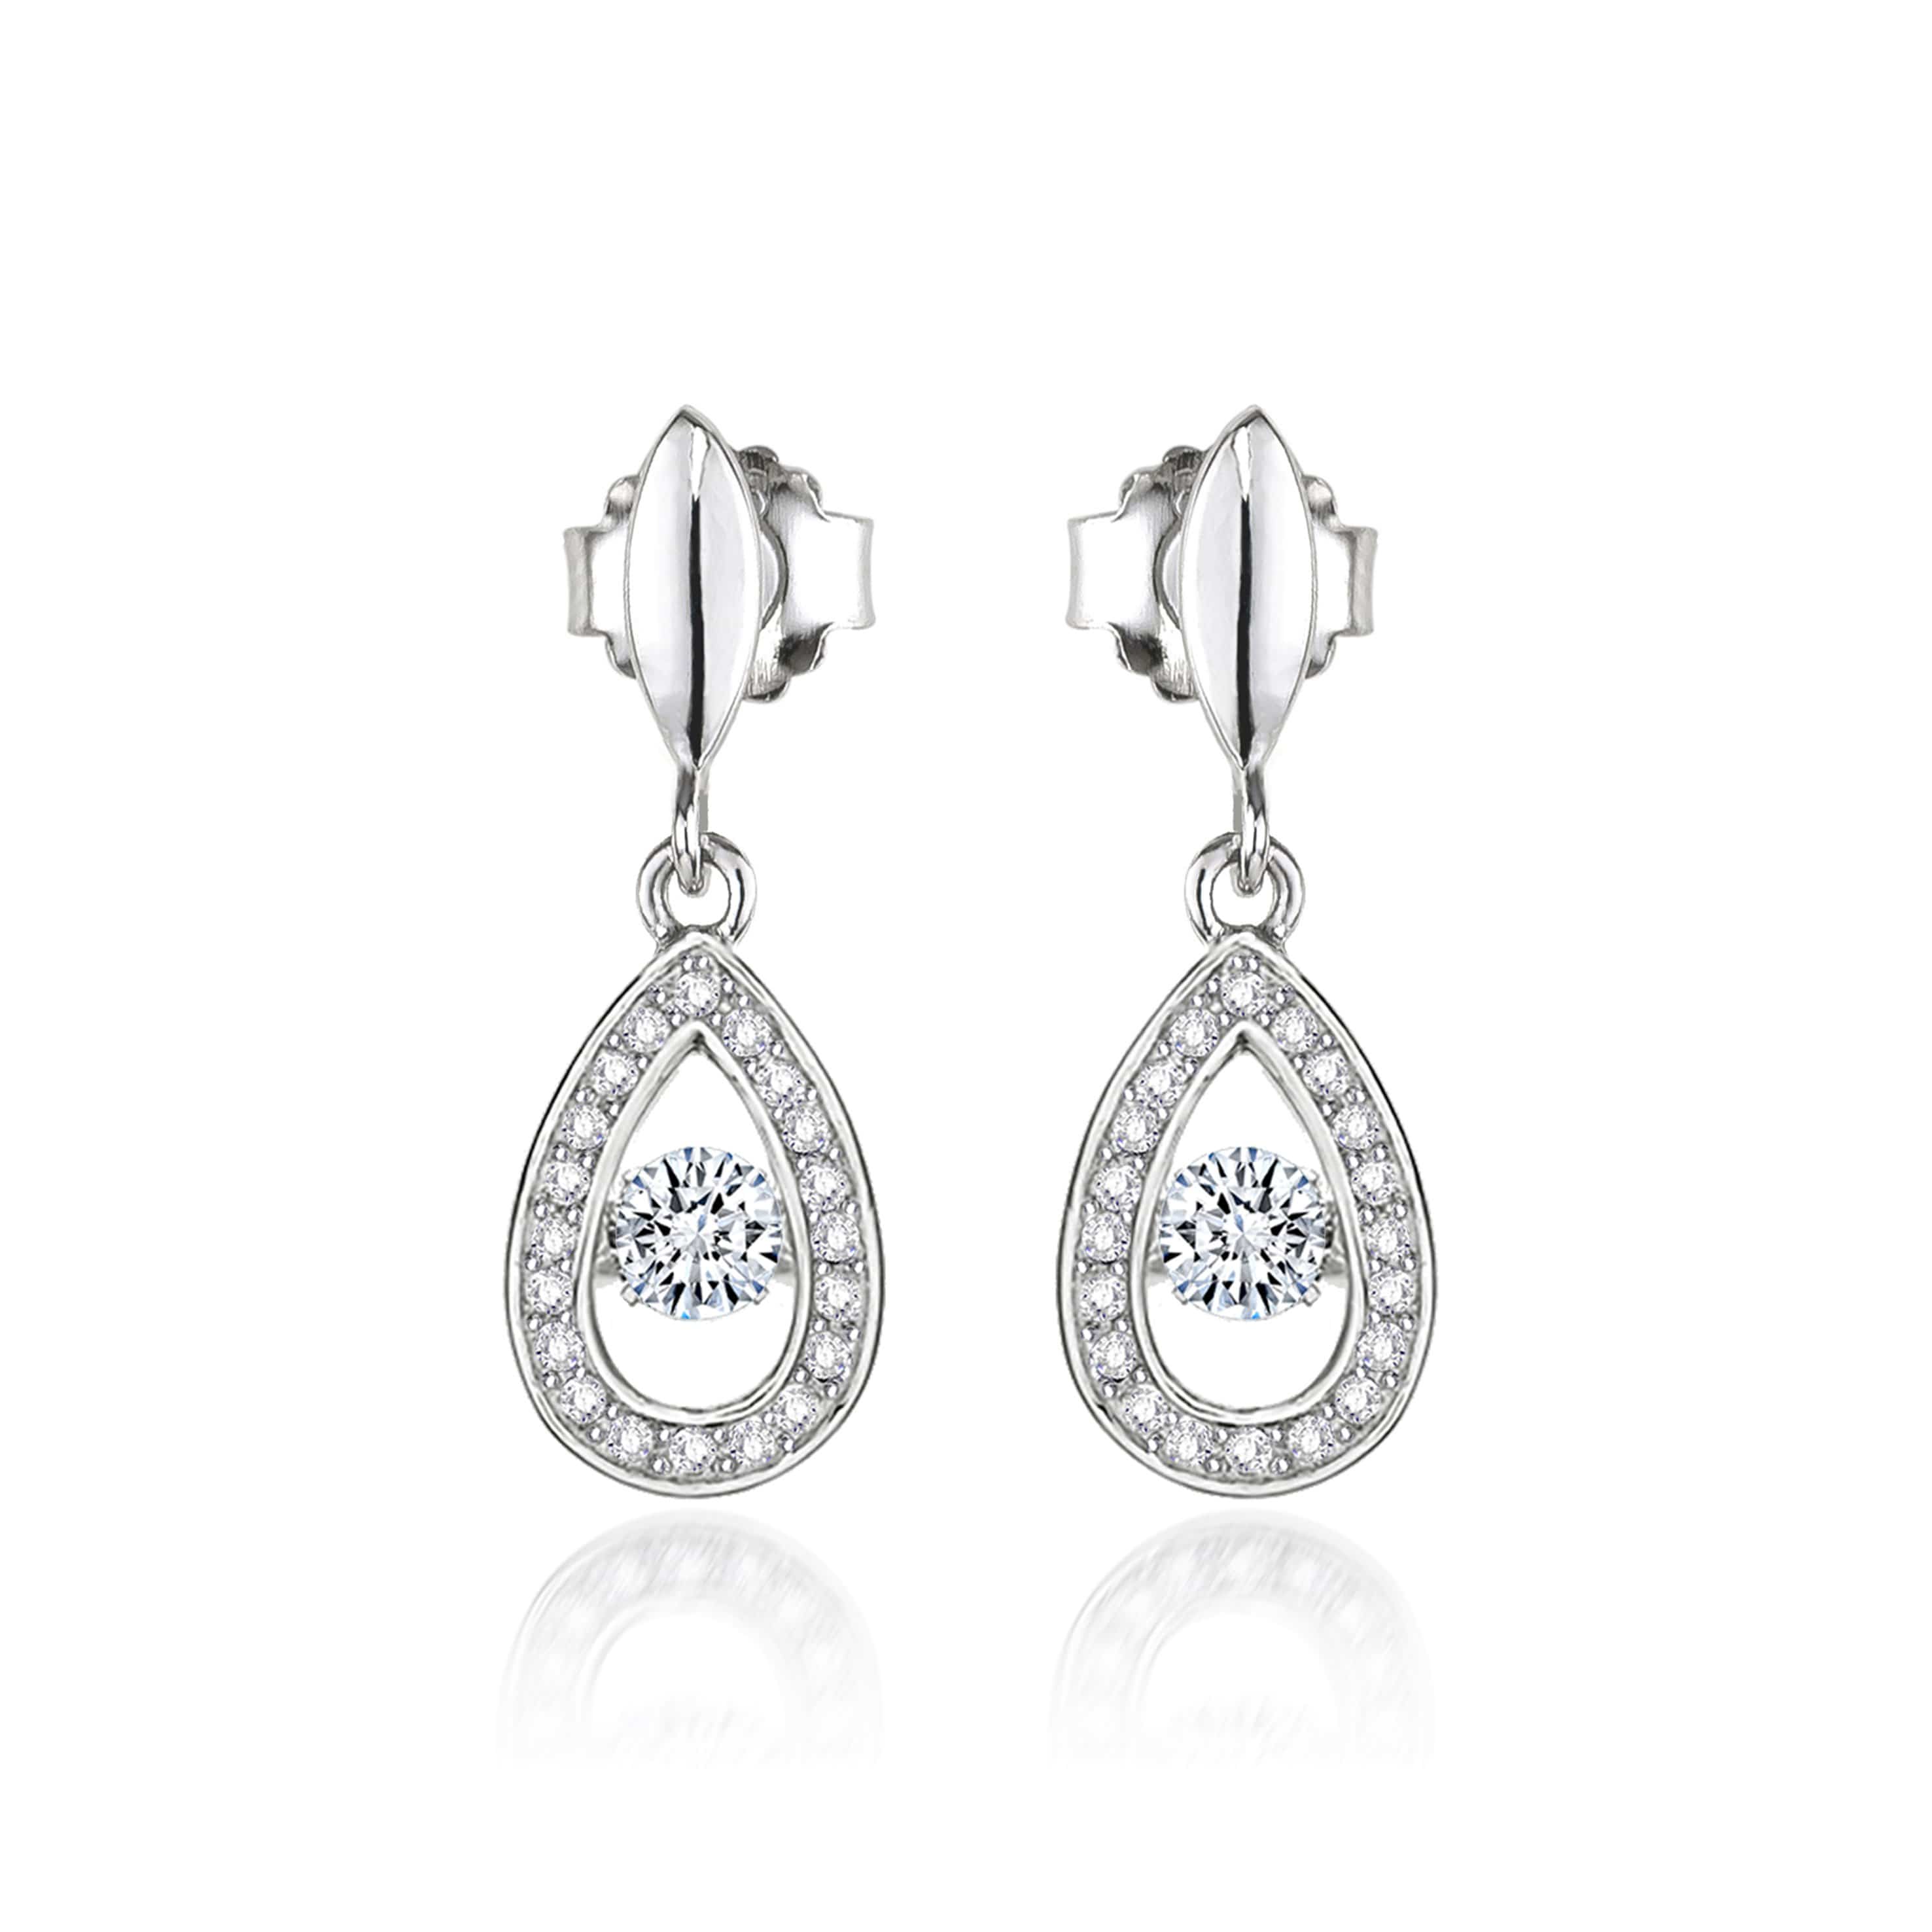 Lynora Jewellery Earring Sterling Silver Dancing Teardrop Earrings Sterling Silver